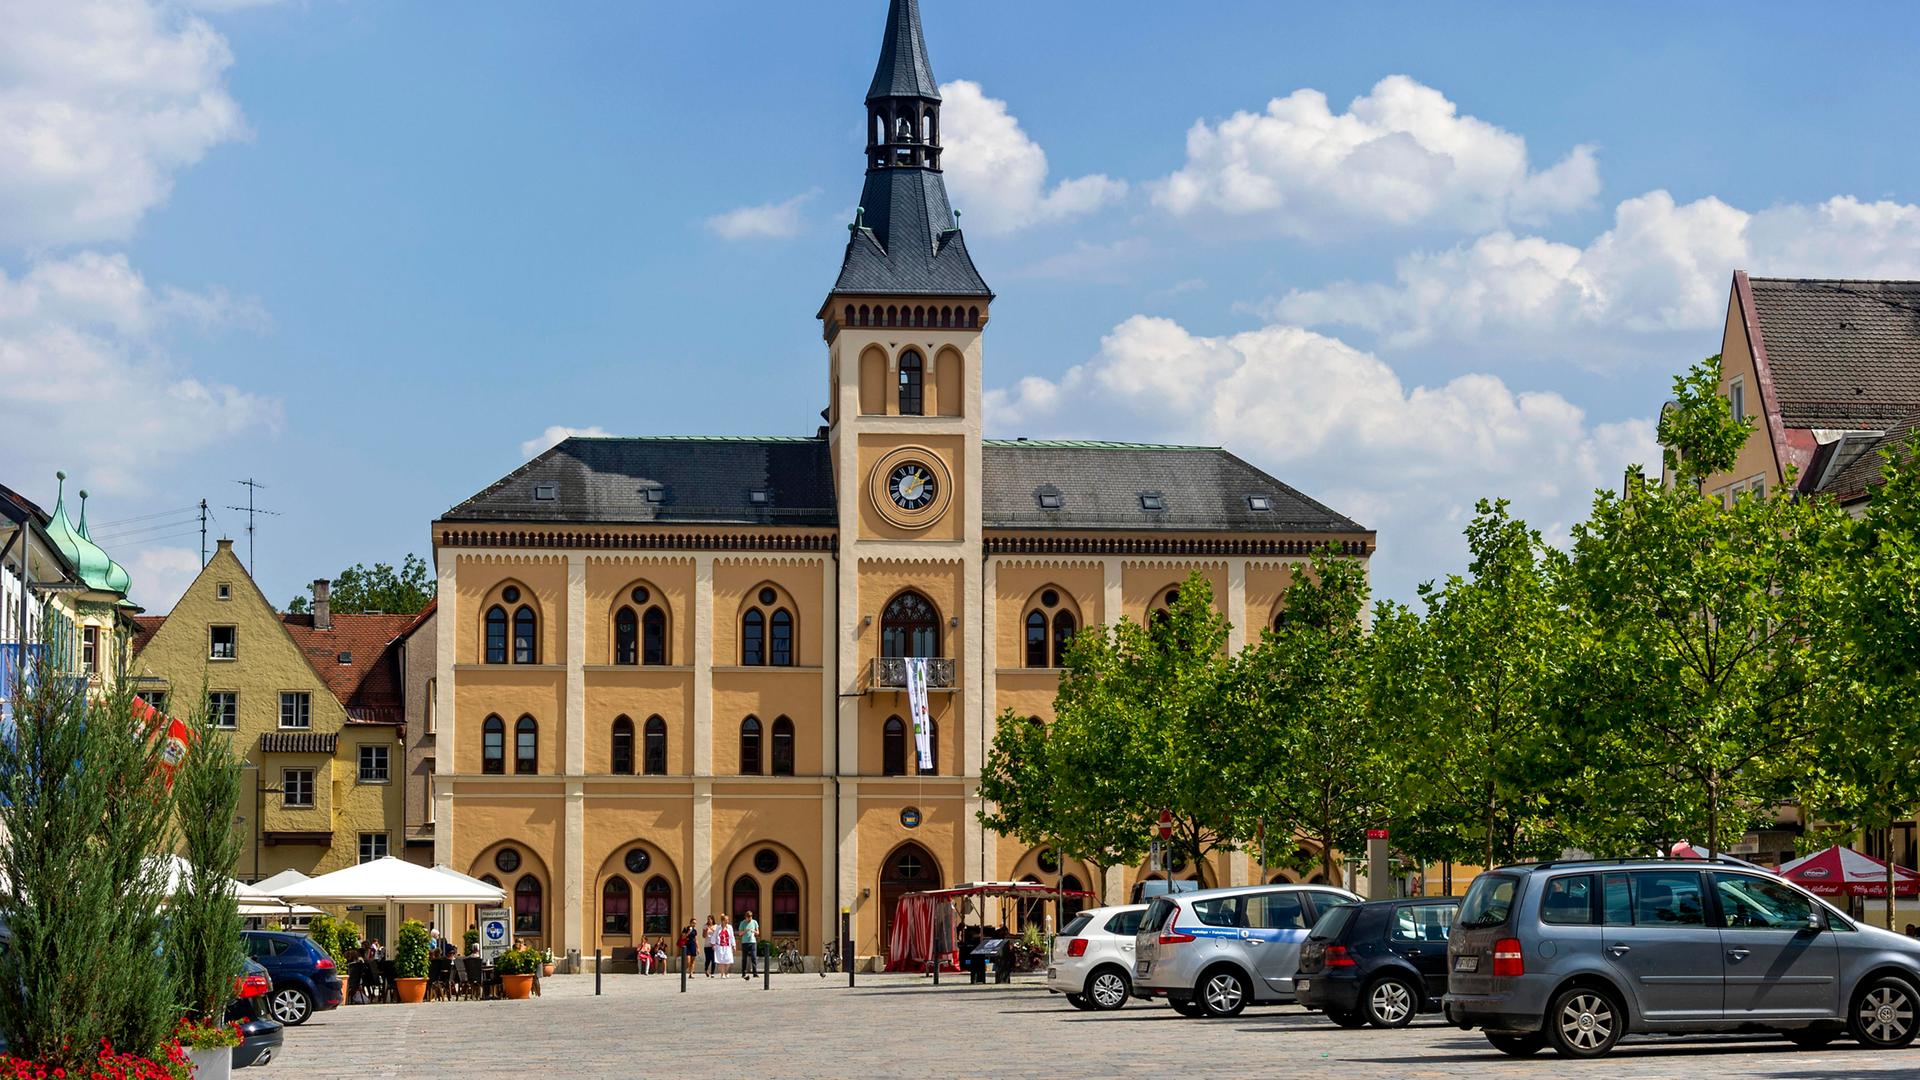 Das Rathaus am Unteren Hauptplatz in Pfaffenhofen an der Ilm in Oberbayern. Im Vordergrund parken Autos.